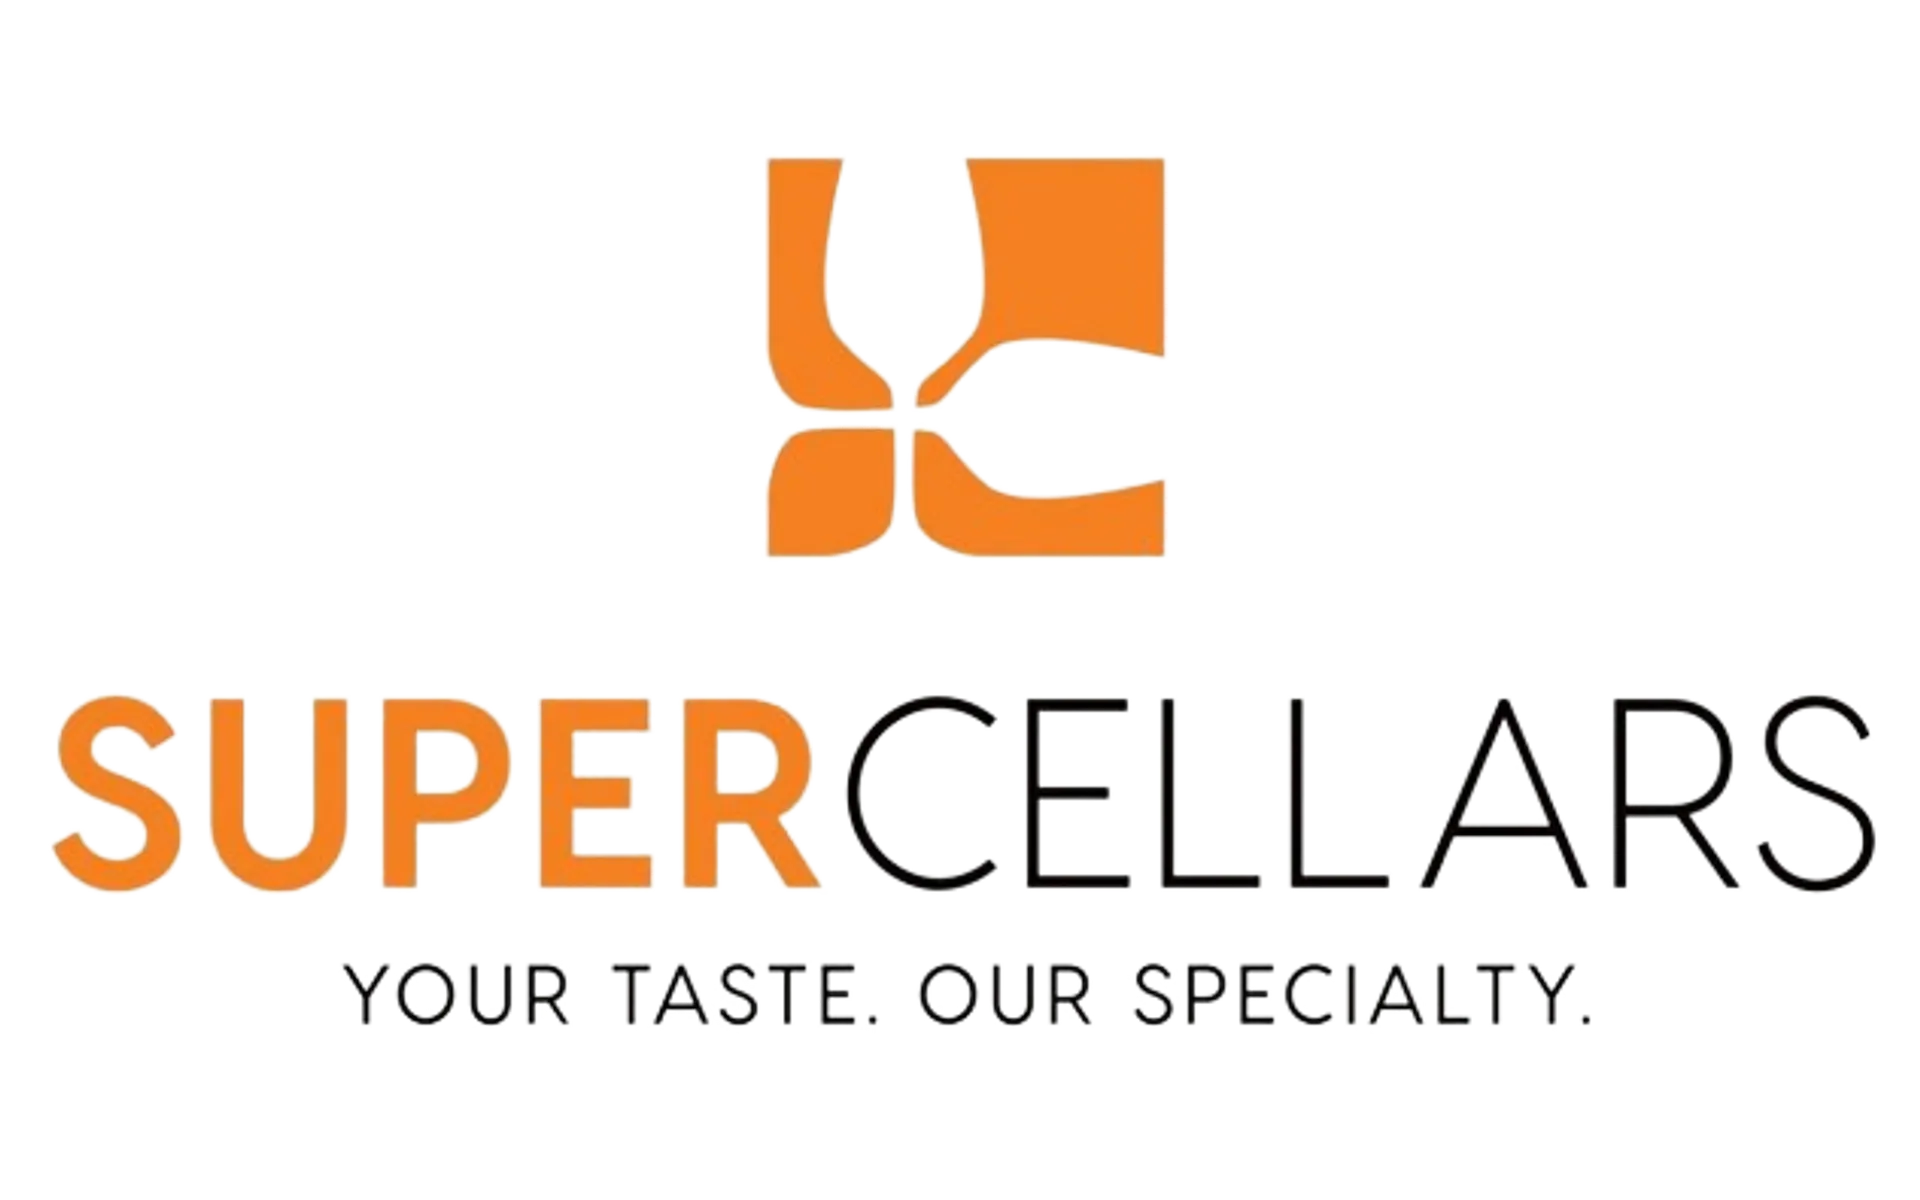 SUPER CELLARS logo of current catalogue